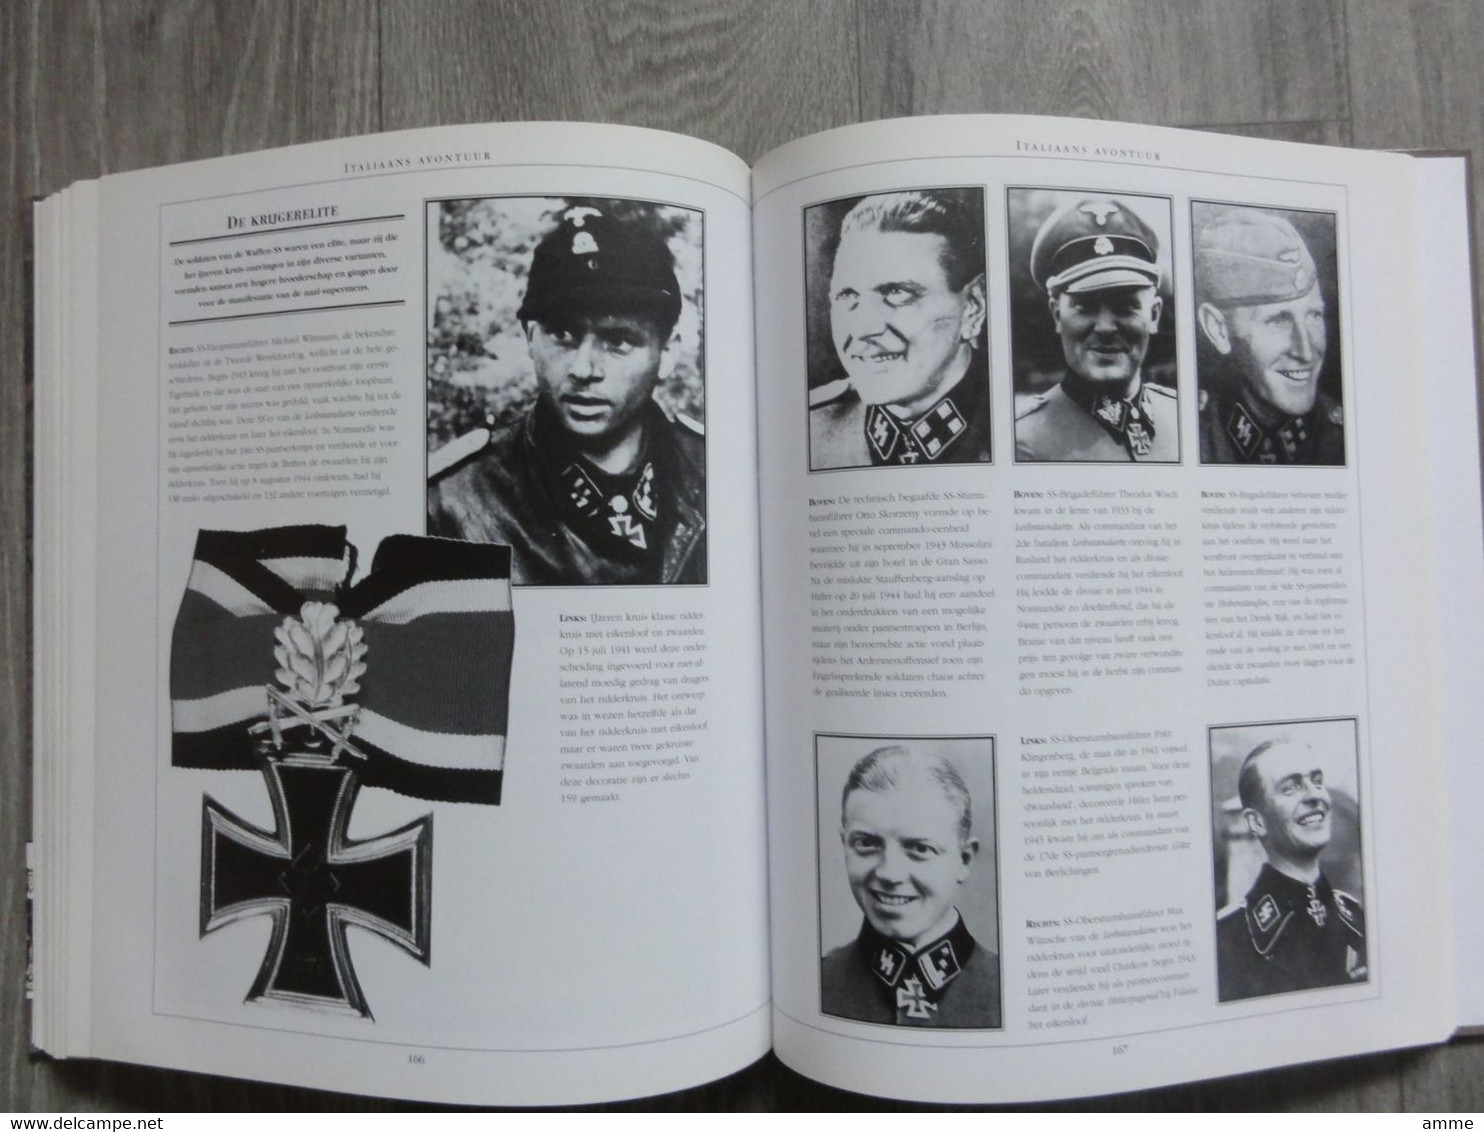 Oorlog * (Boek)   De geschiedenis van de Waffen-SS 1923-1945